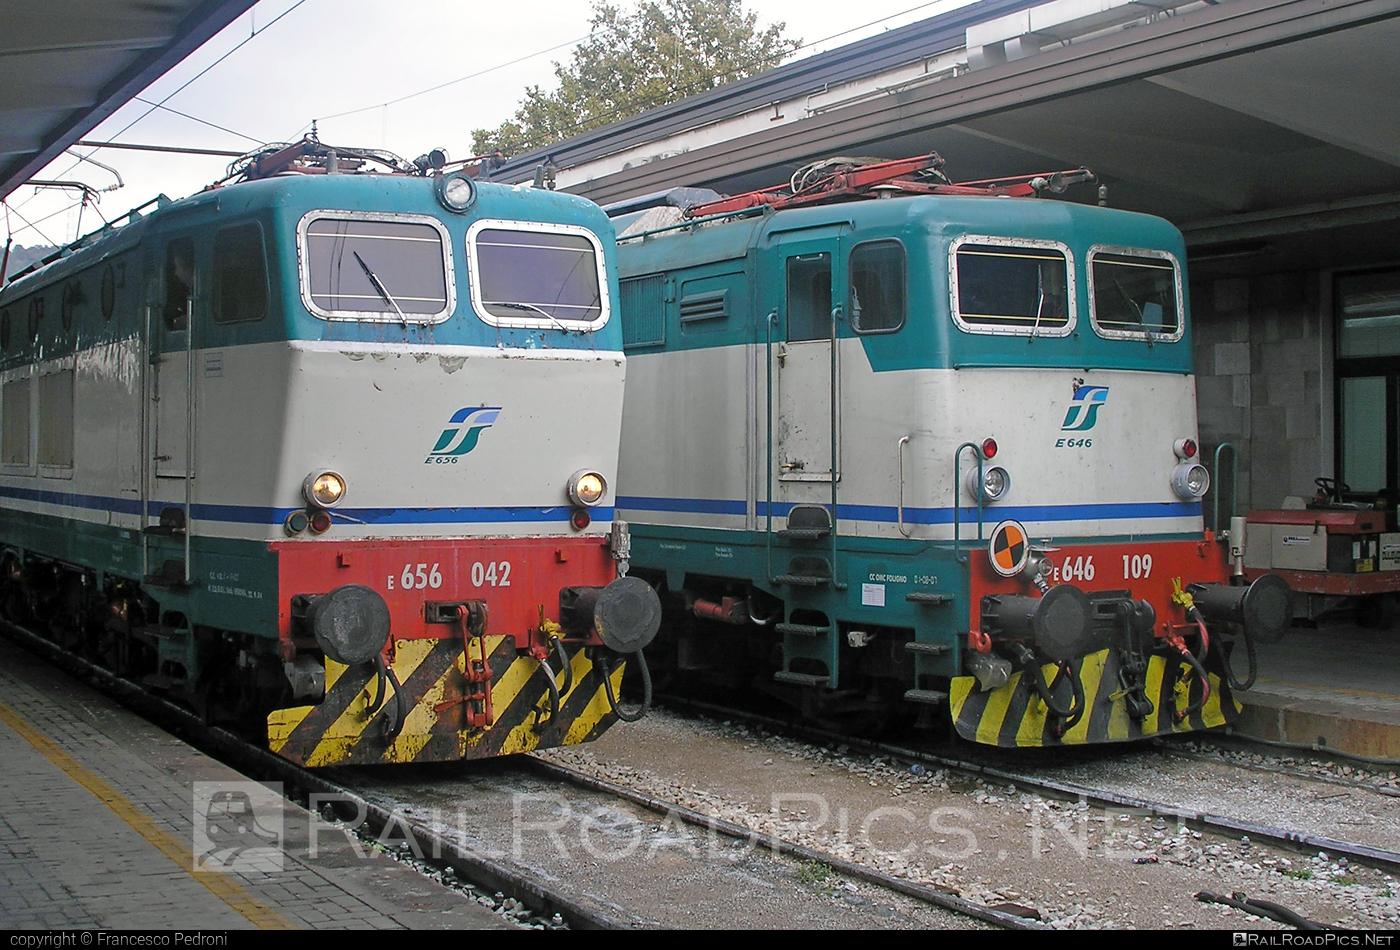 FS Class E.656 - E656 042 operated by Trenitalia S.p.A. #caimano #classE656 #e656locomotive #ferroviedellostato #fs #fsClassE656 #fsitaliane #trenitalia #trenitaliaspa